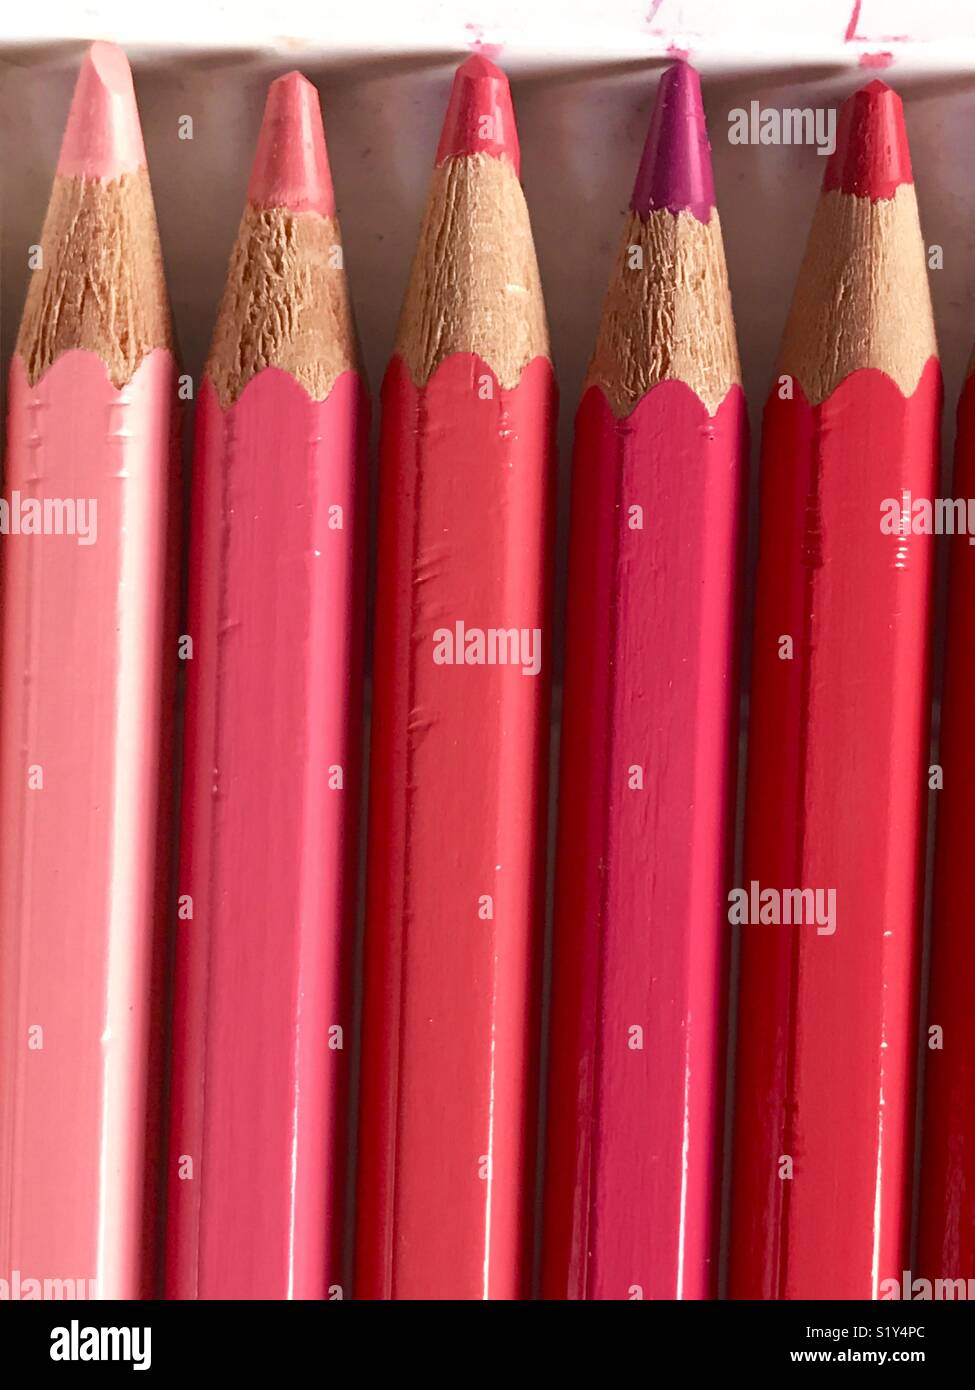 Crayons de couleur rose. Banque D'Images